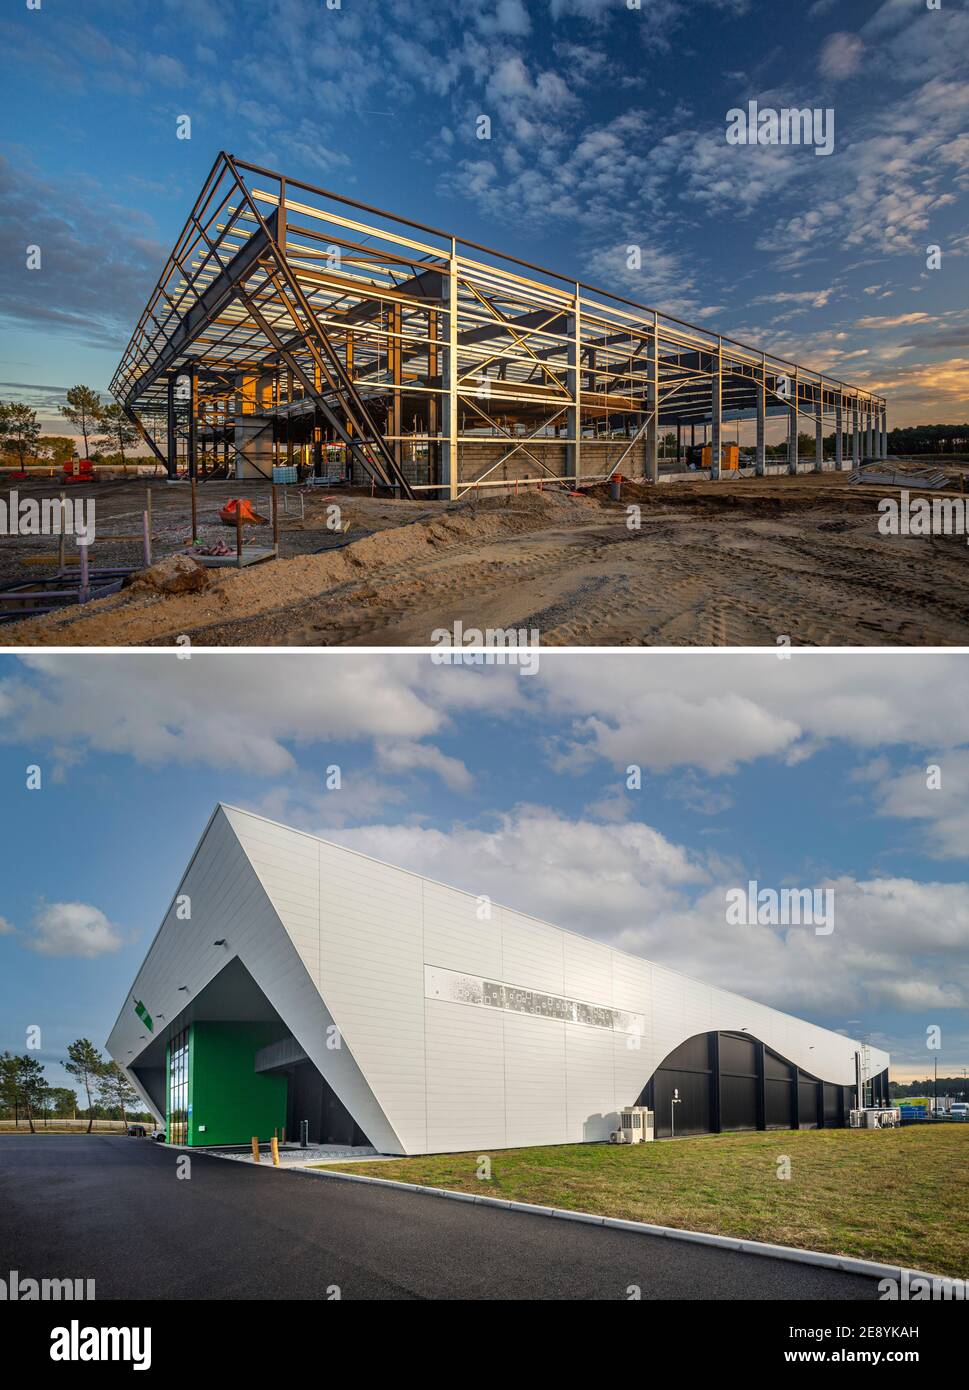 Vistas anteriores y posteriores que ilustran la construcción de un edificio industrial de estructura metálica. Foto de stock